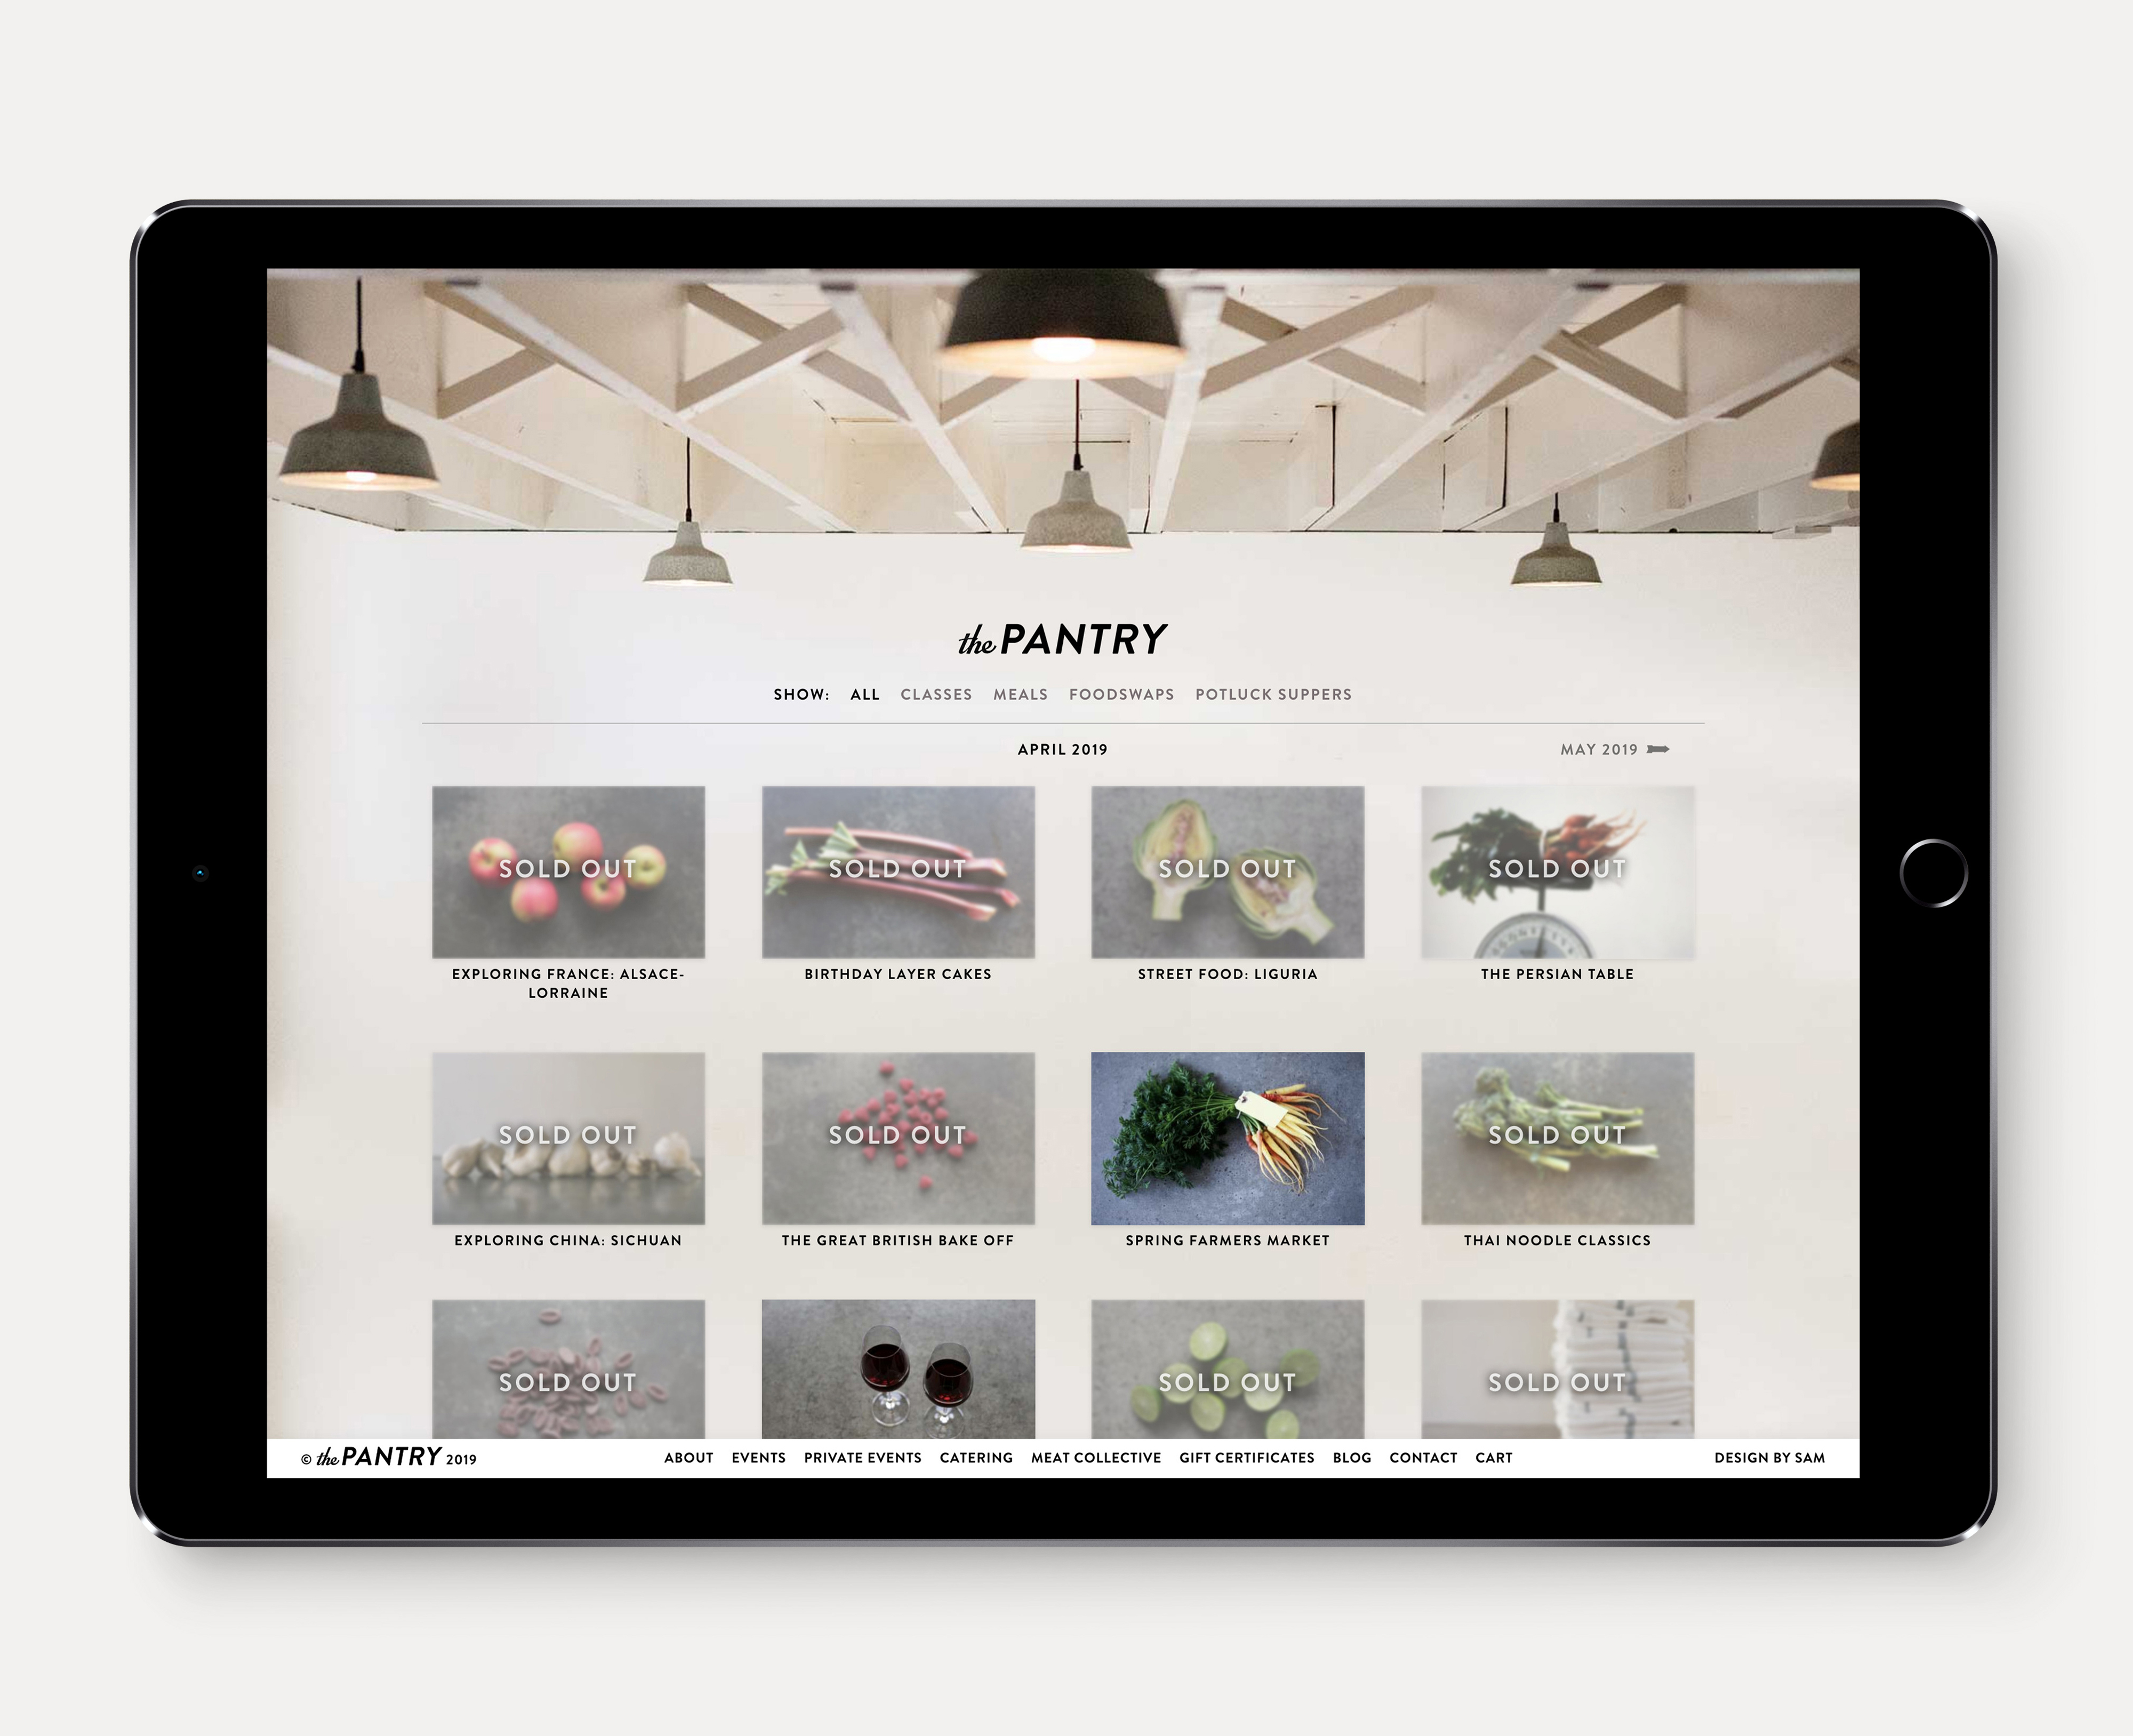 The Pantry website calendar on an iPad